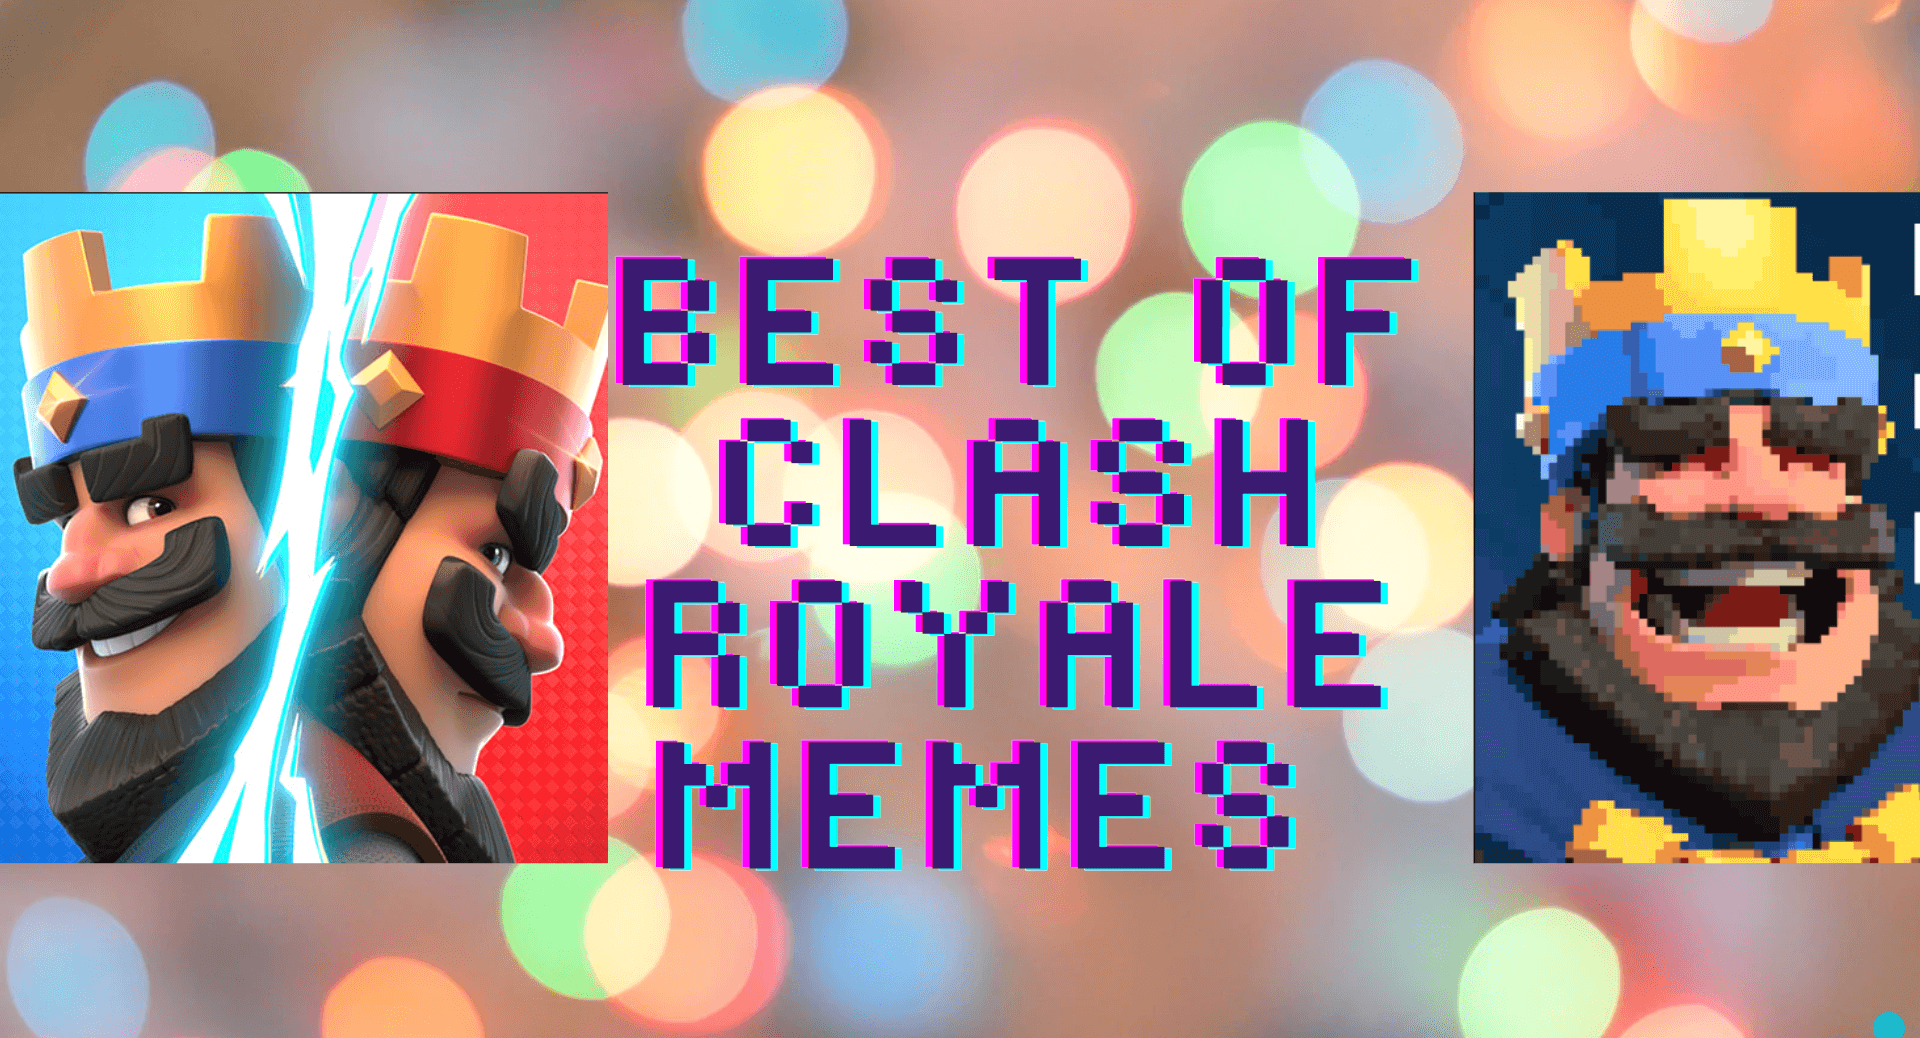 Best Of Clash Royale Memes